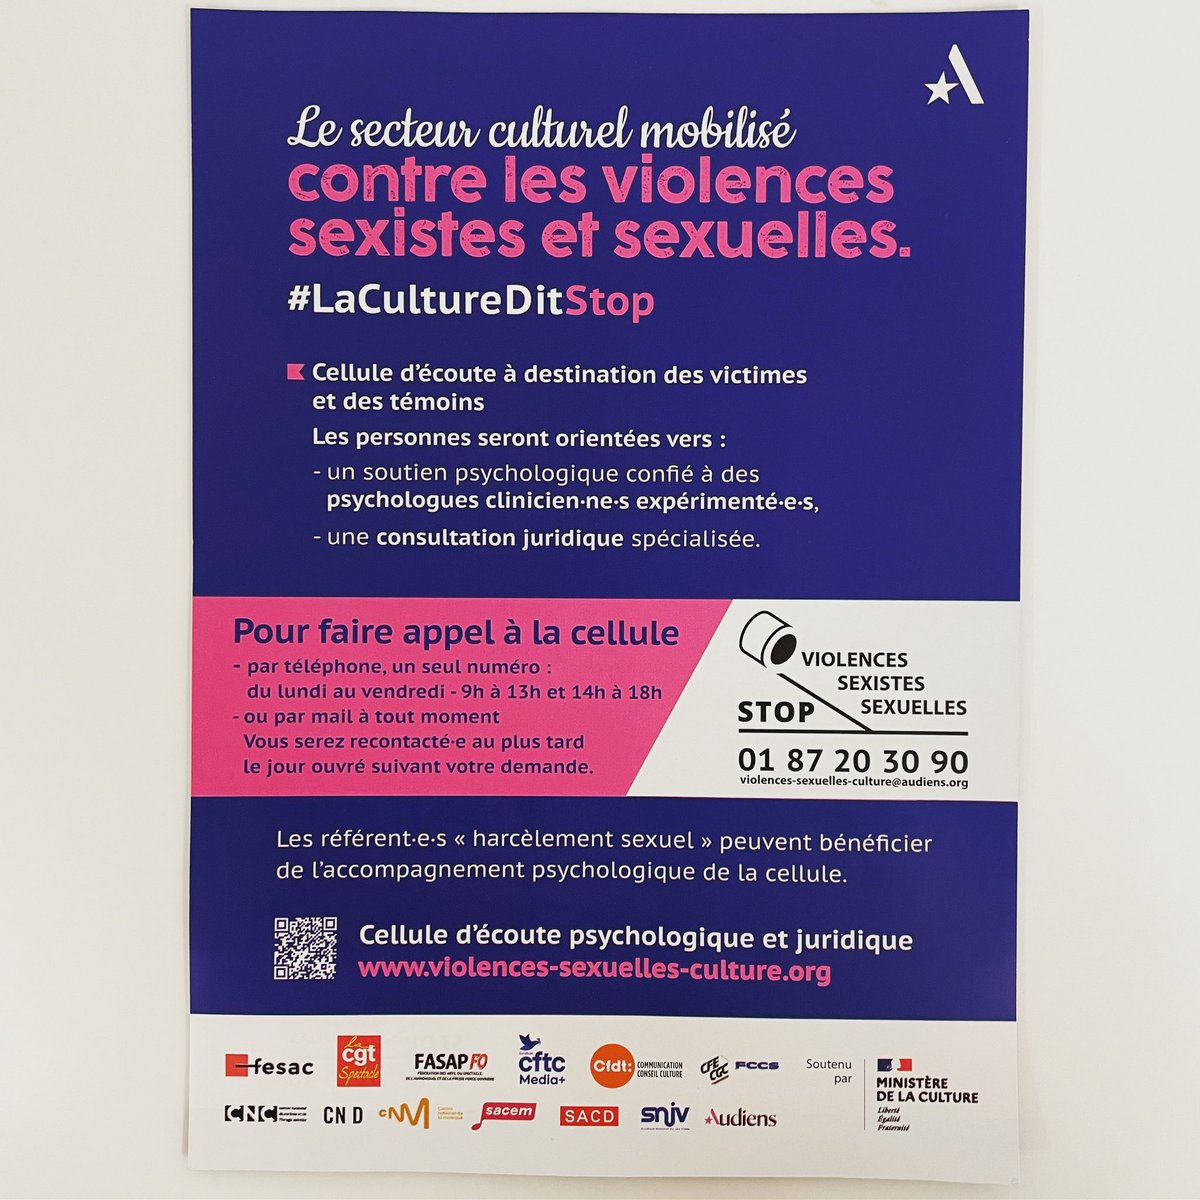 Stop #VHSS #violences #harcèlement #sexistes #sexuelles #cinema #audiovisuel #culture #everyone